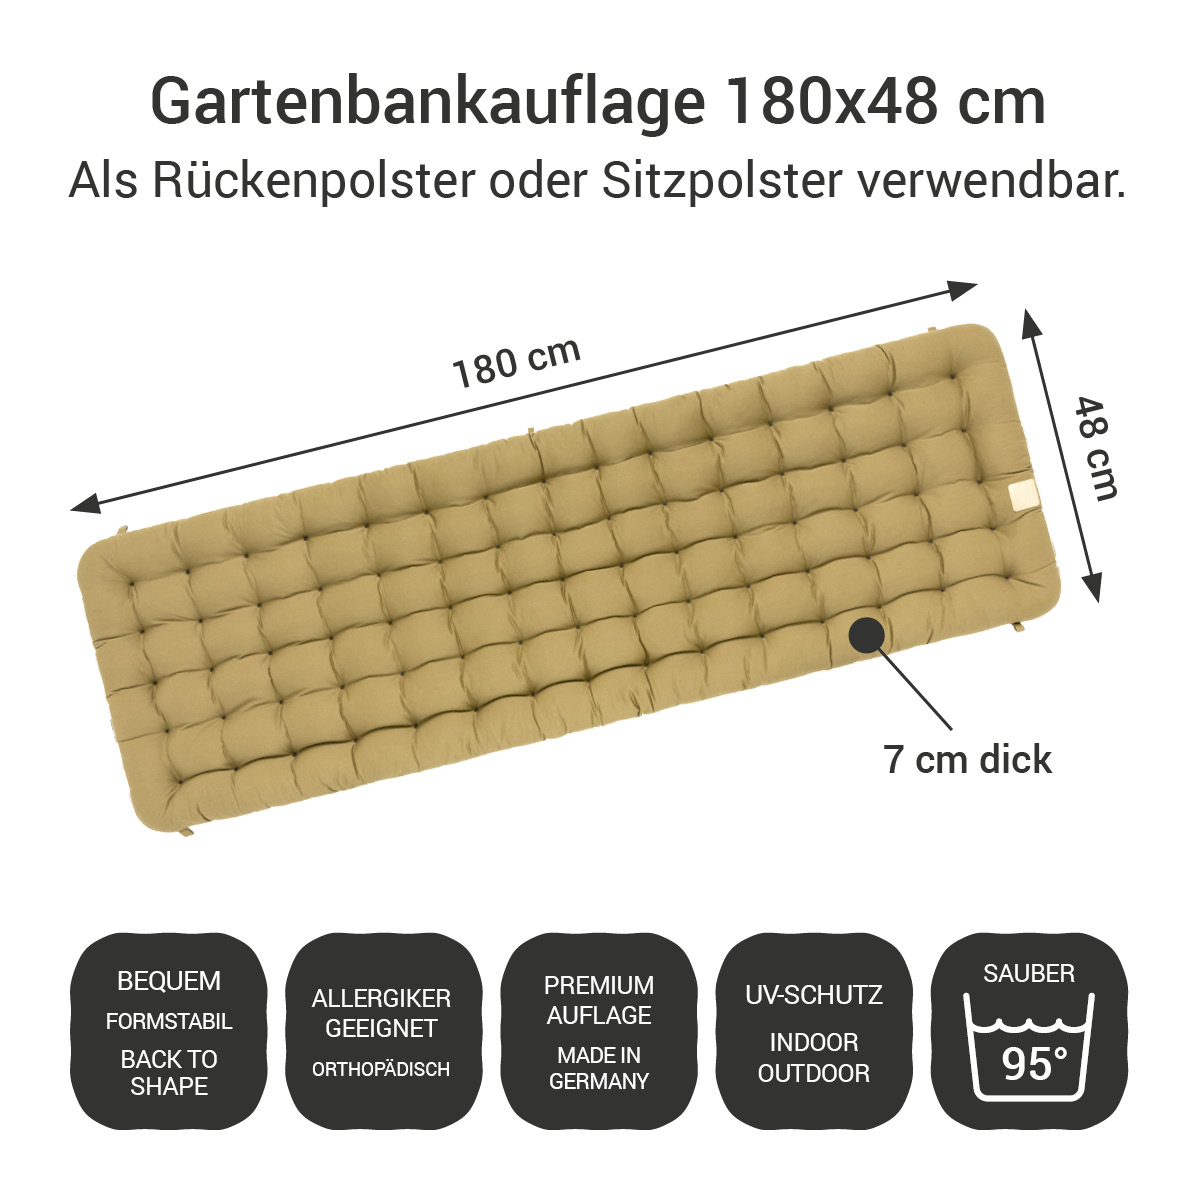 Gartenbank Auflage beige 180x48 cm / 180 x 50 cm | bequem & orthopädisch, komplett im Ganzen waschbar bis 95°C, wetterfest, Made in Germany